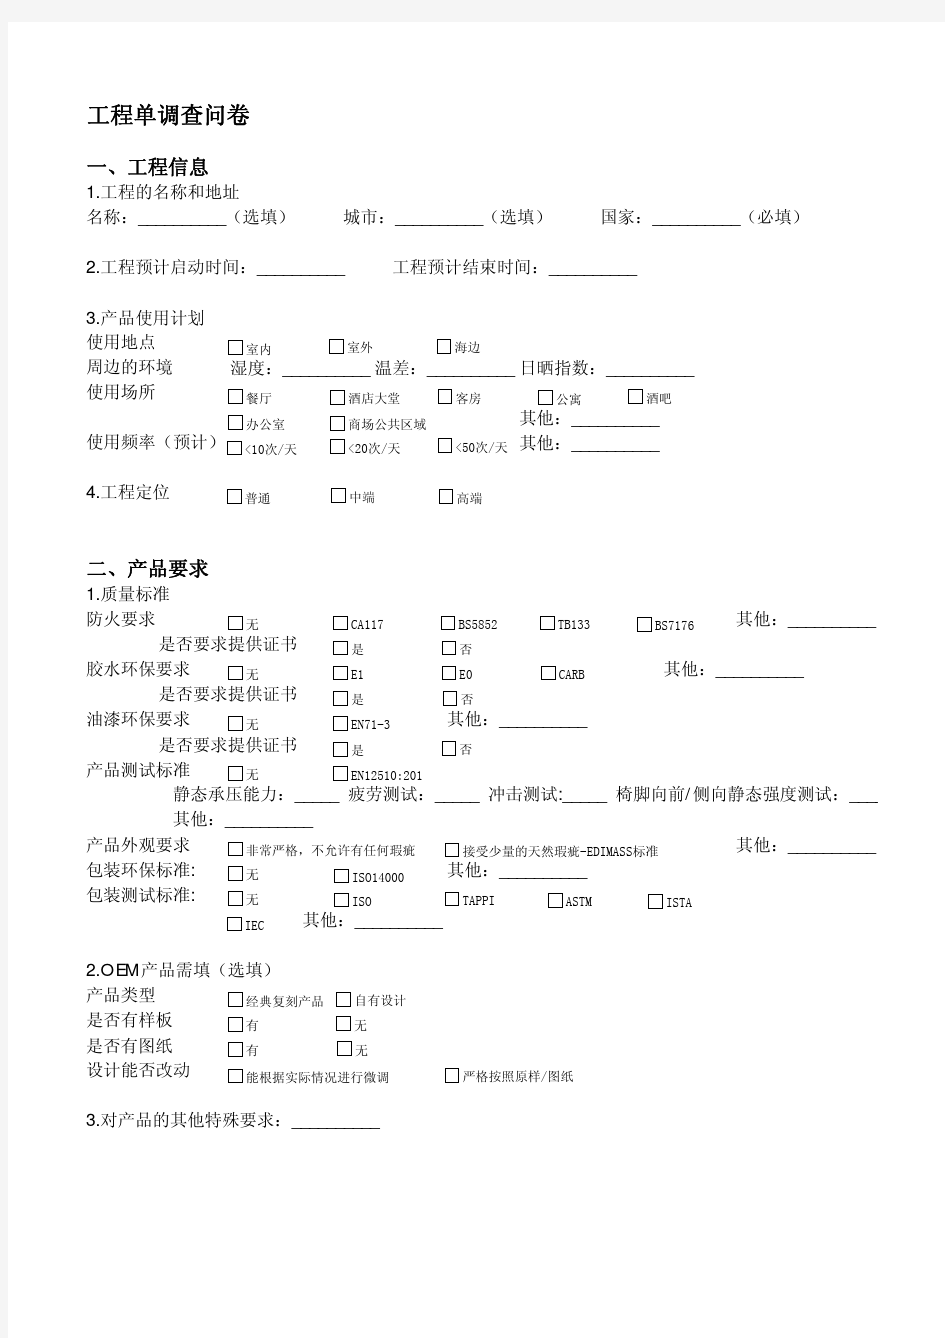 工程项目调查问卷-中文版